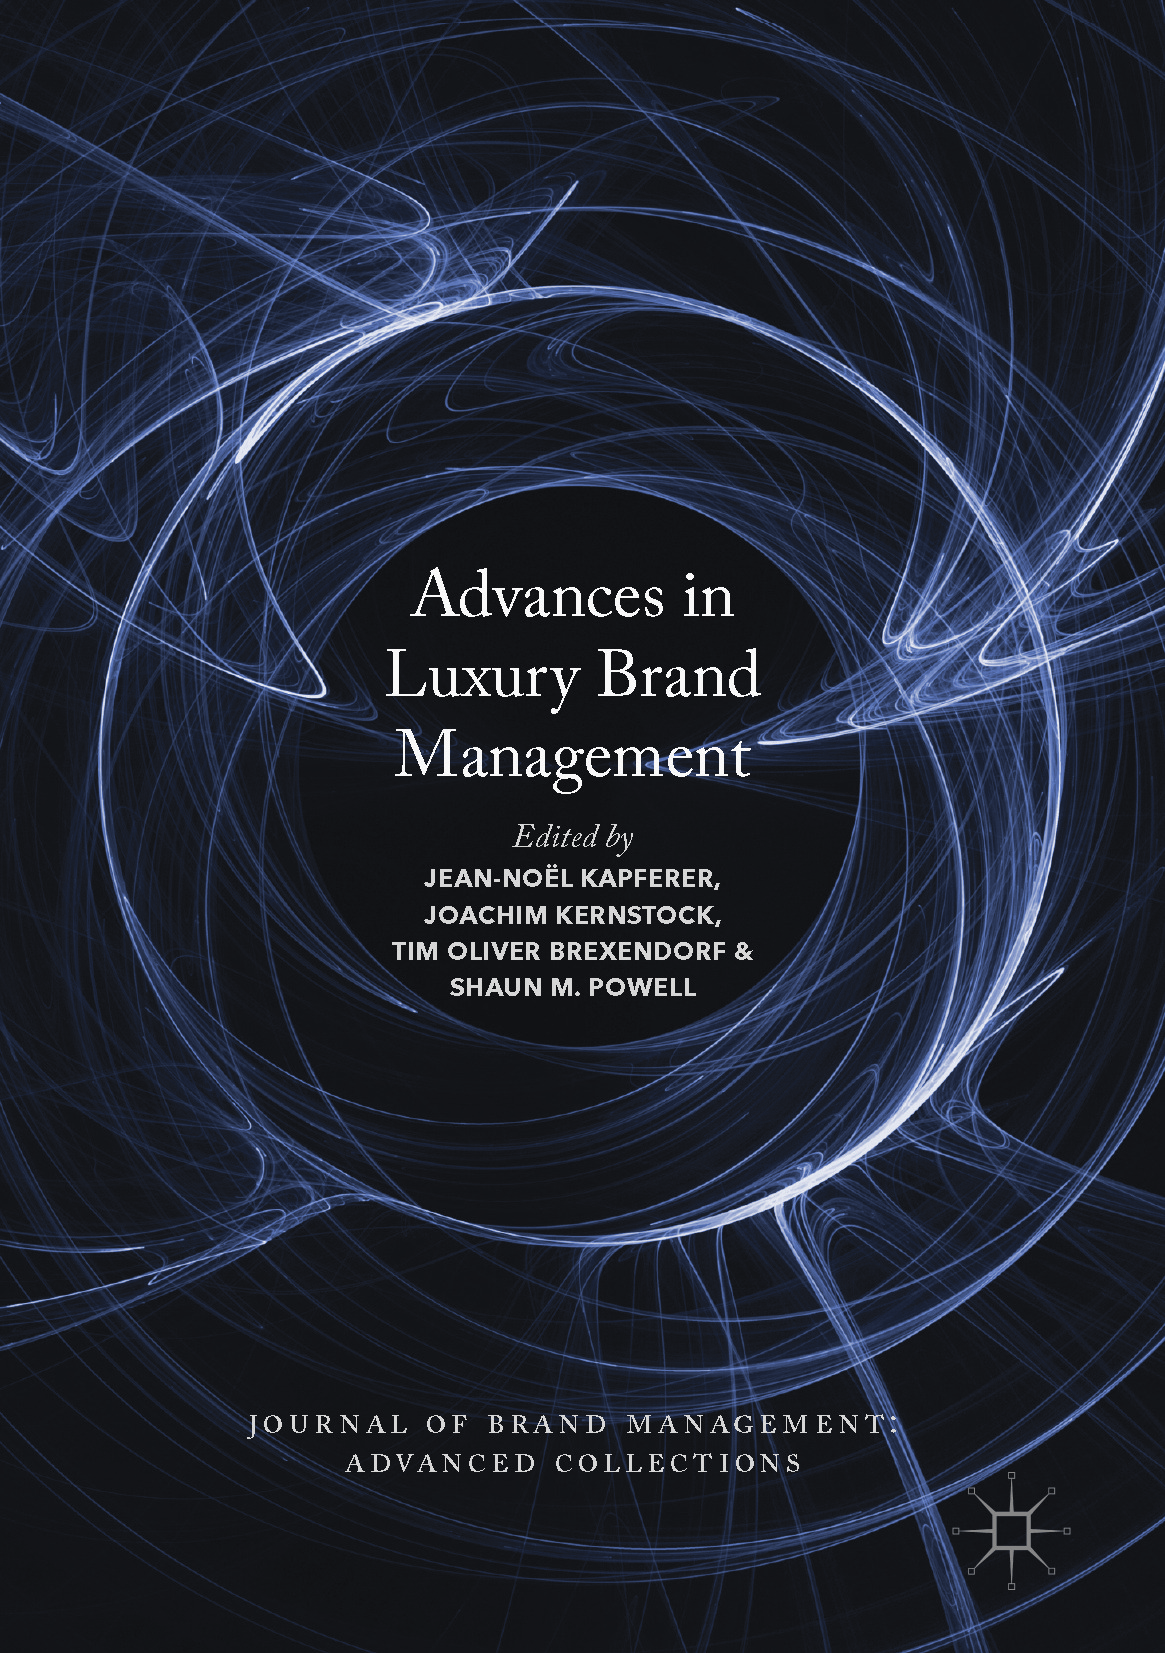 Brexendorf, Tim Oliver - Advances in Luxury Brand Management, ebook